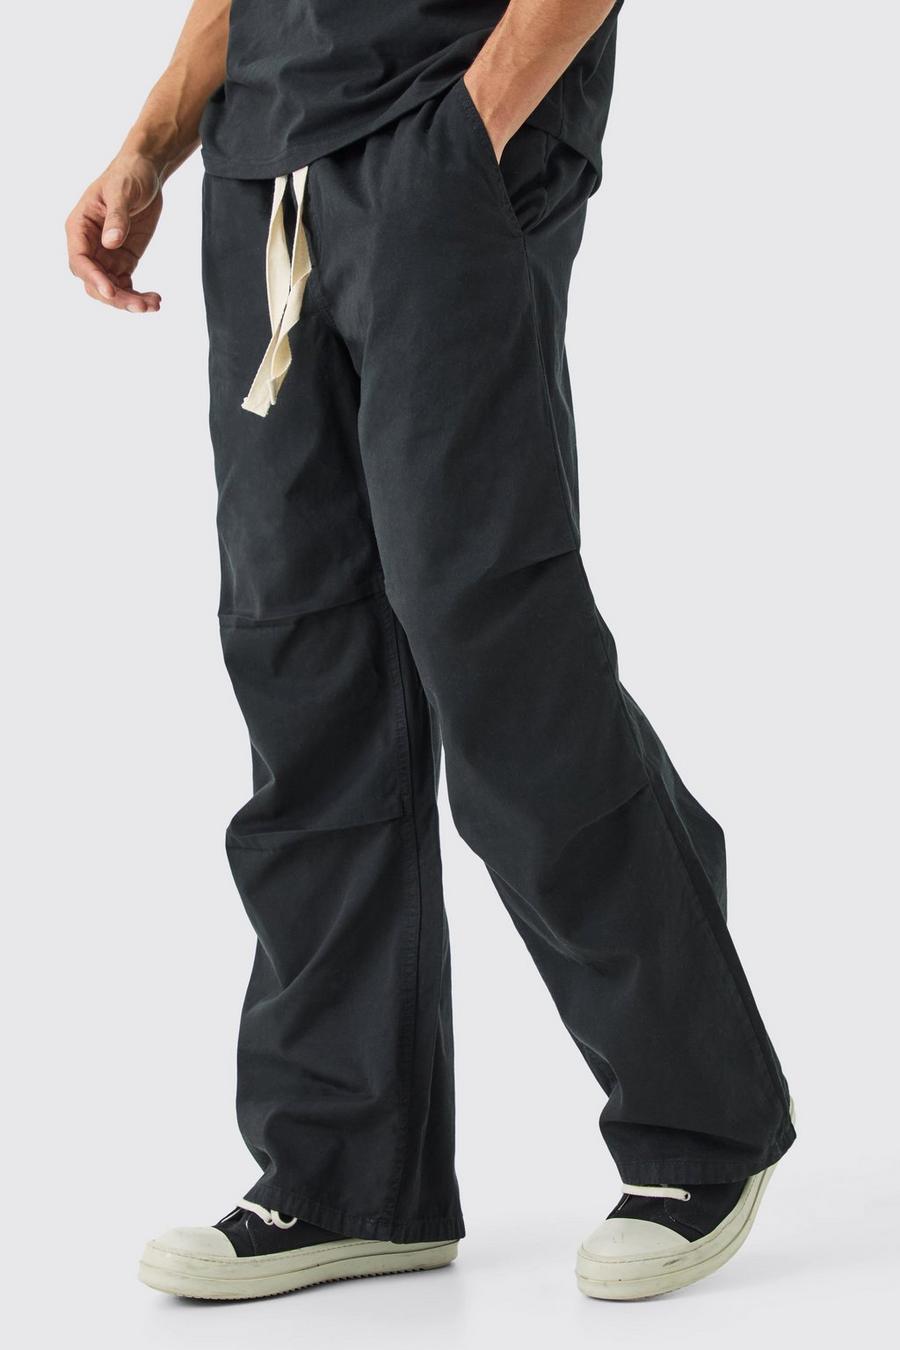 Pantaloni extra comodi con vita elasticizzata e laccetti a contrasto, Black